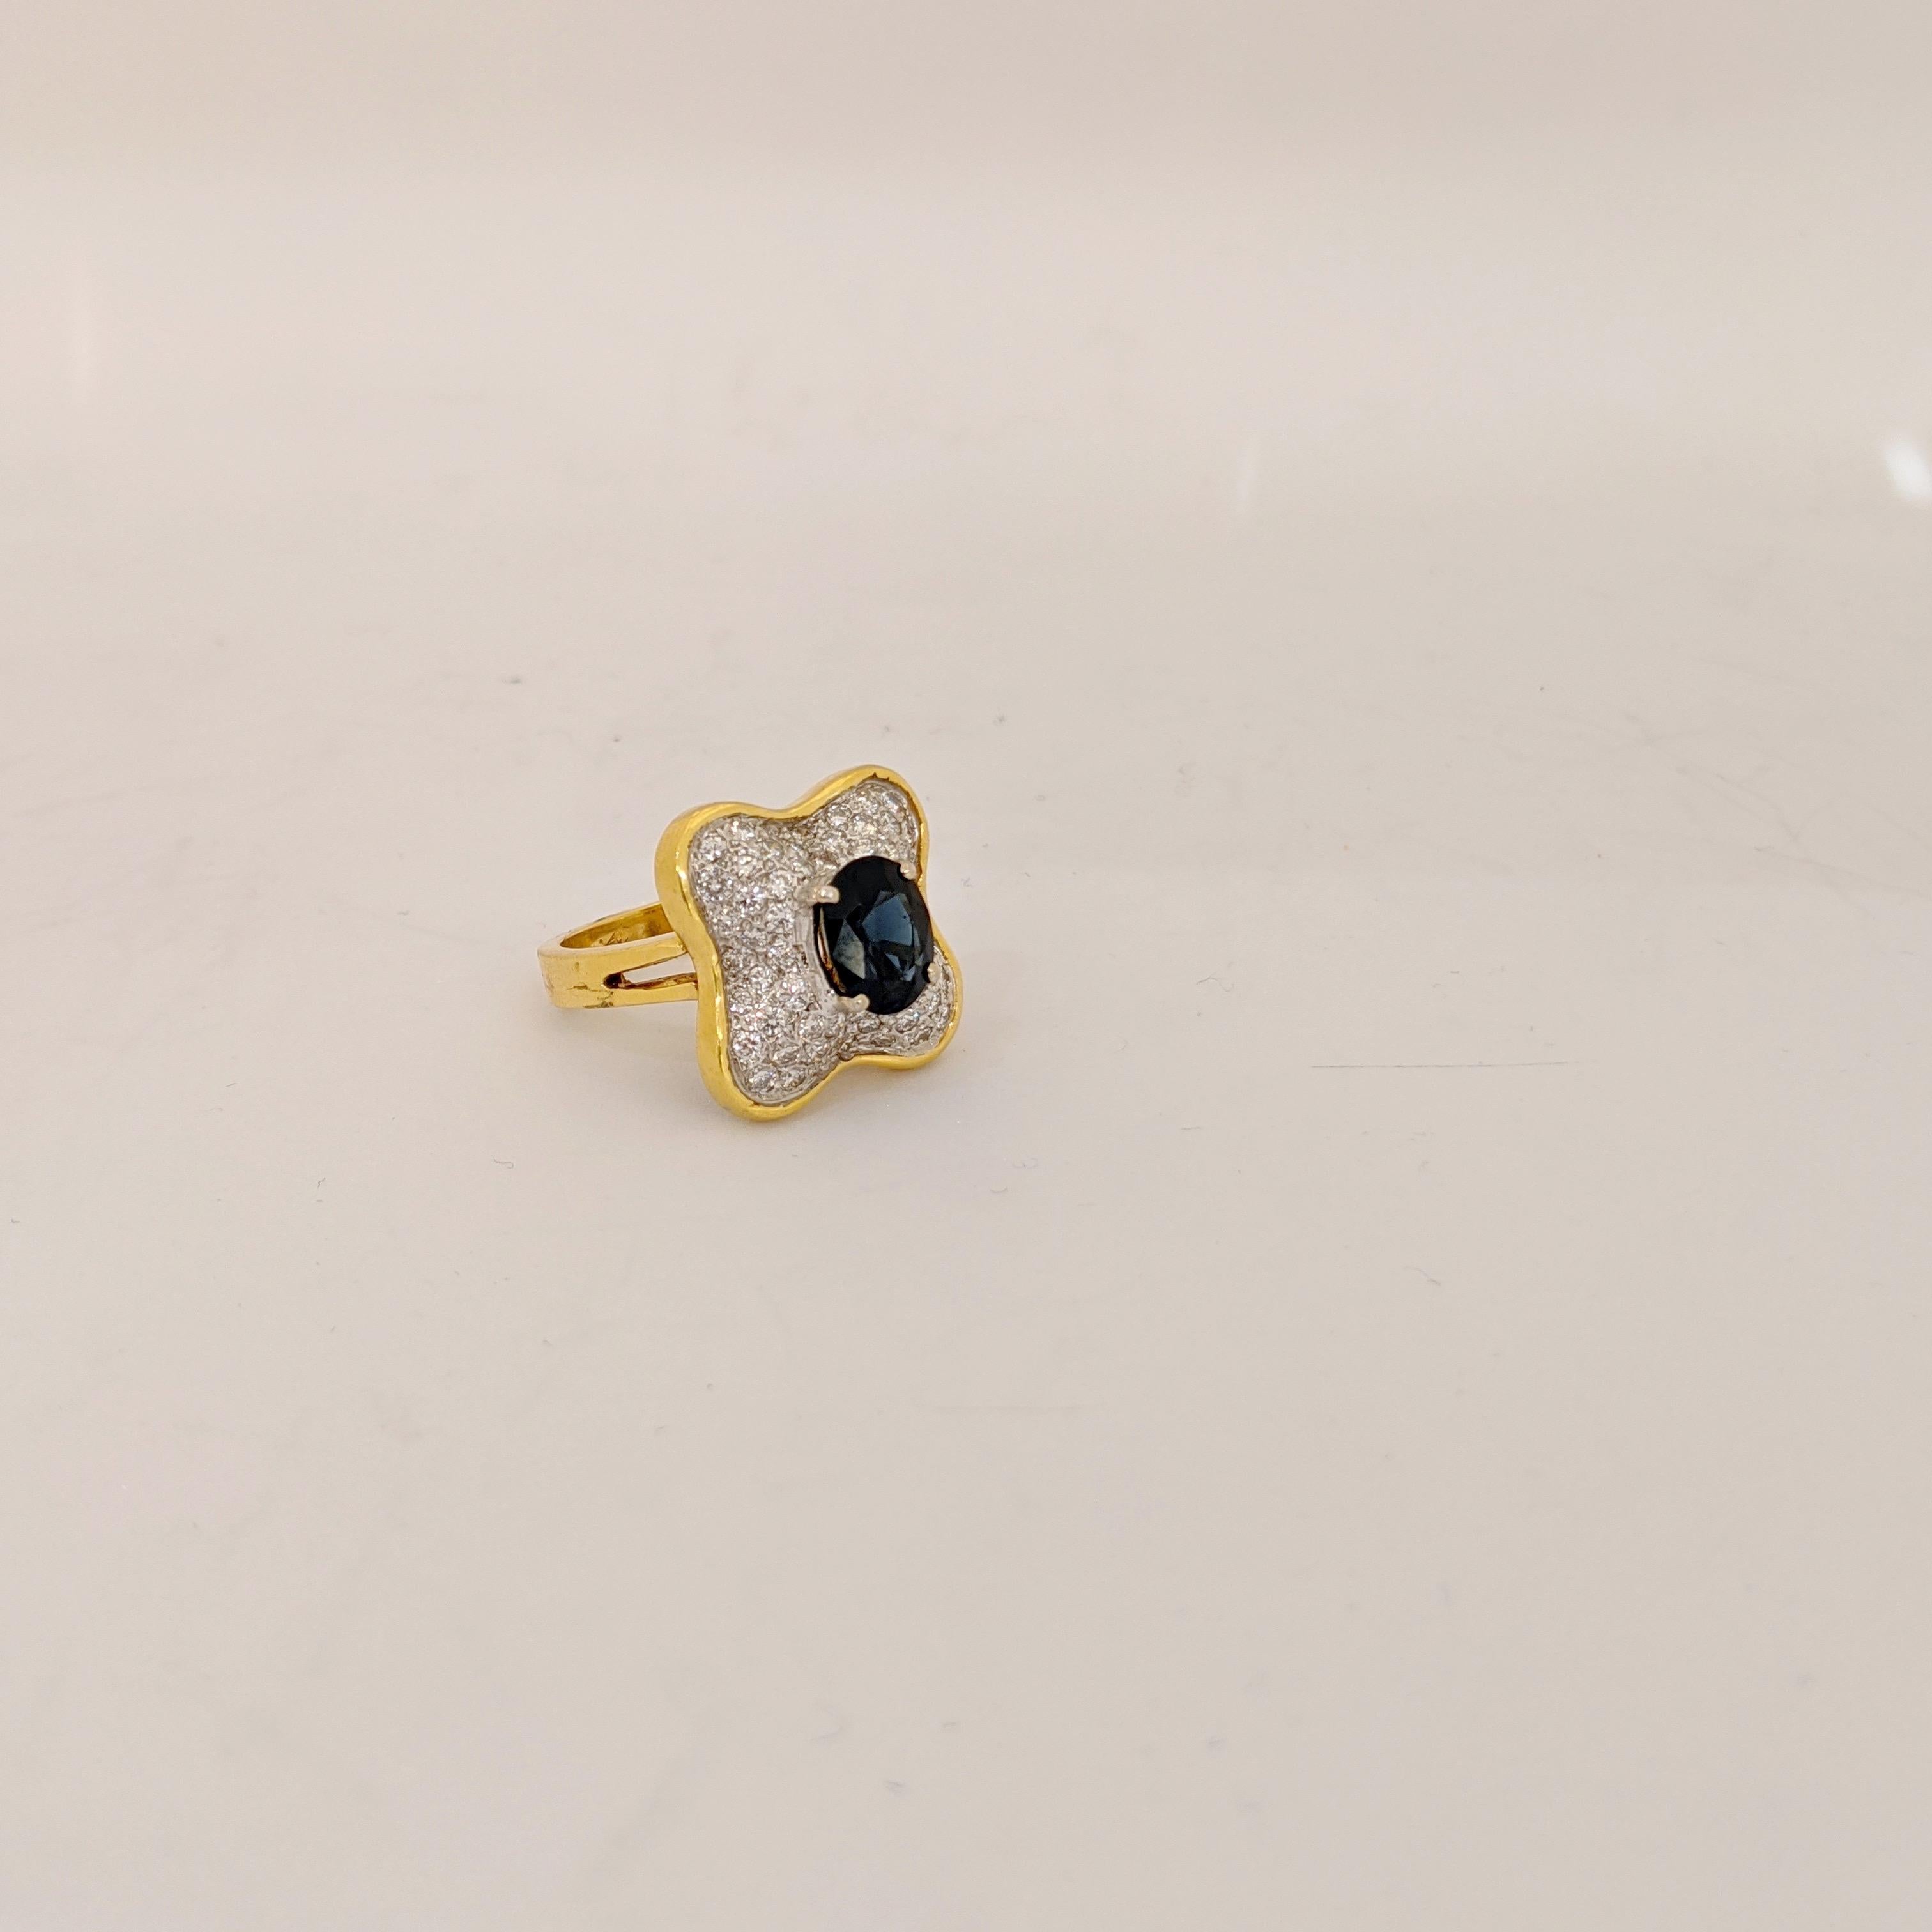 Vintage Honora 1980, Ring aus 18 Karat Gelbgold. Kleeblattform, besetzt mit 1,02 Karat  runden Brillanten und einem ovalen blauen Saphir von 2,27 Karat.
Ring Größe 6.25   Größenoptionen sind verfügbar
Gestempelt 18K  H